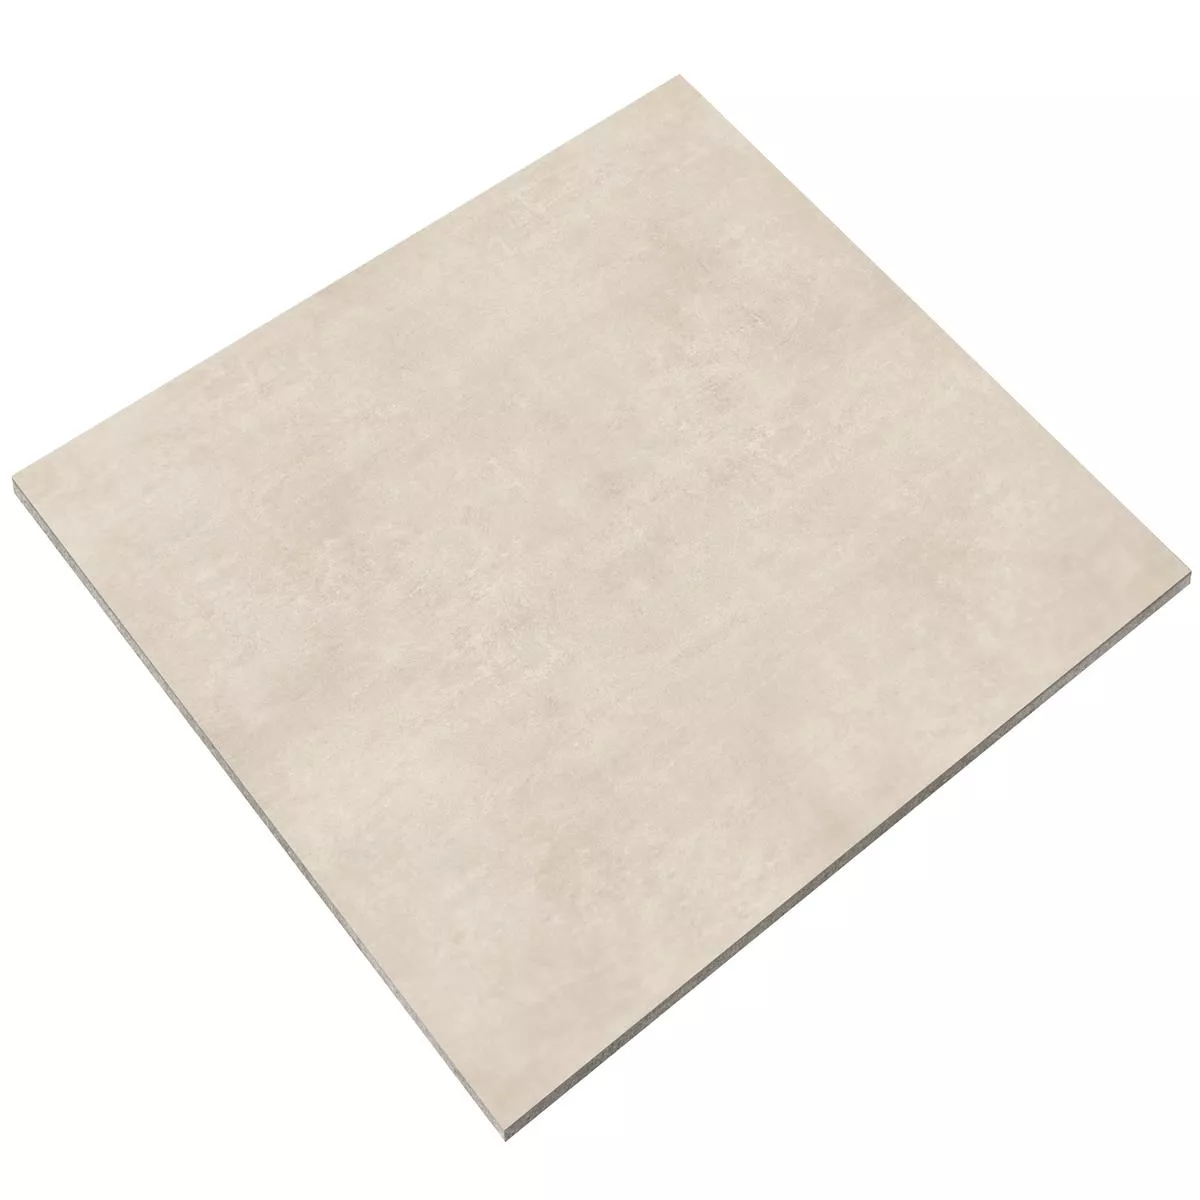 Sample Floor Tiles Cairo Creme 100x100x0,6cm